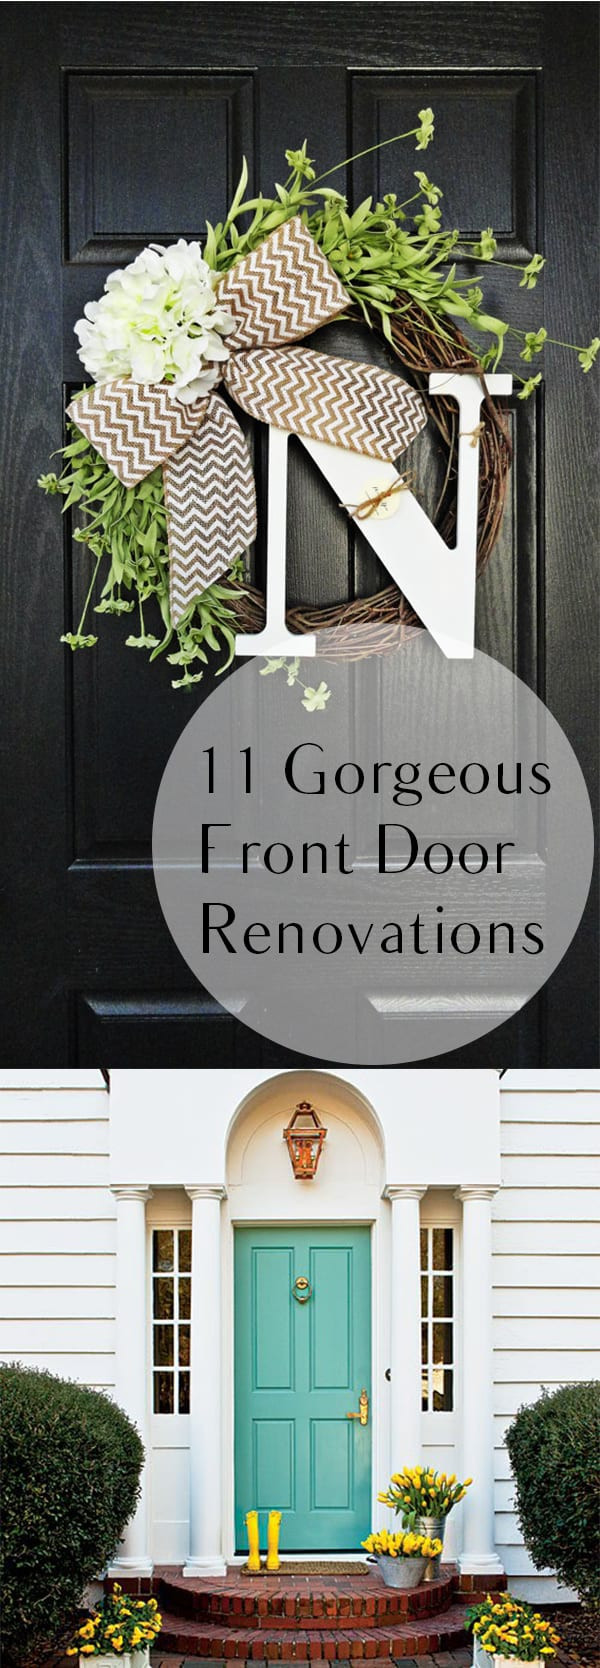 DIY Front Door Decorations
 11 Gorgeous Front Door Renovations